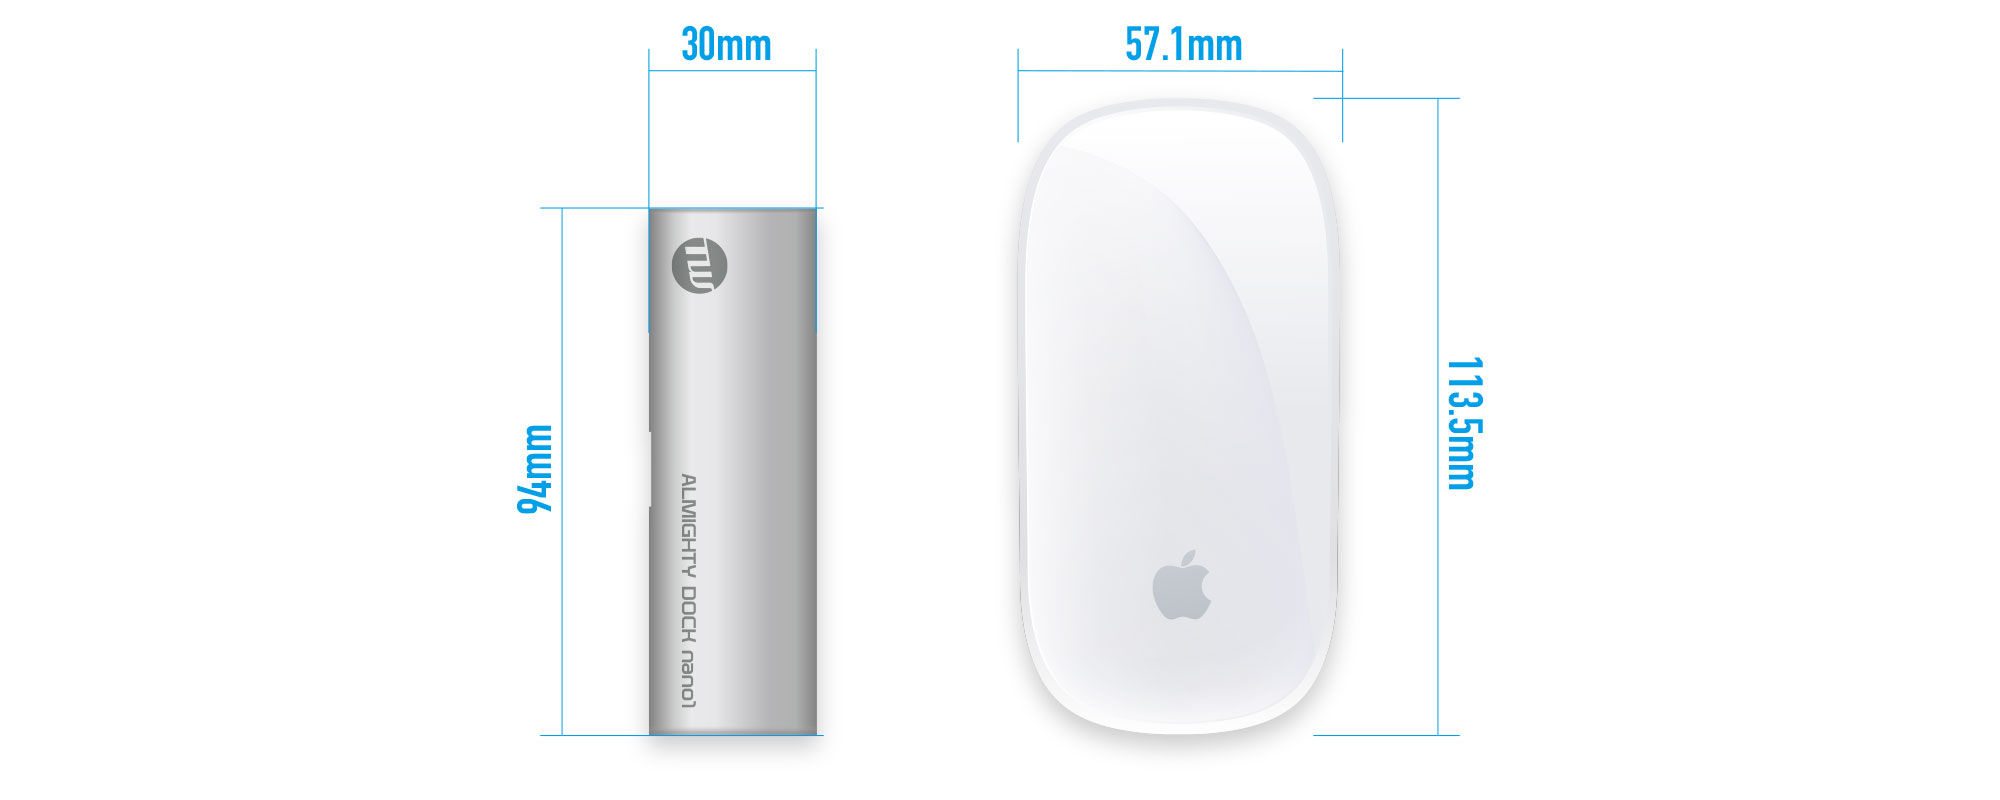 ウルトラポータブル設計。Apple Magic Mouse 2の半分以下のサイズ感